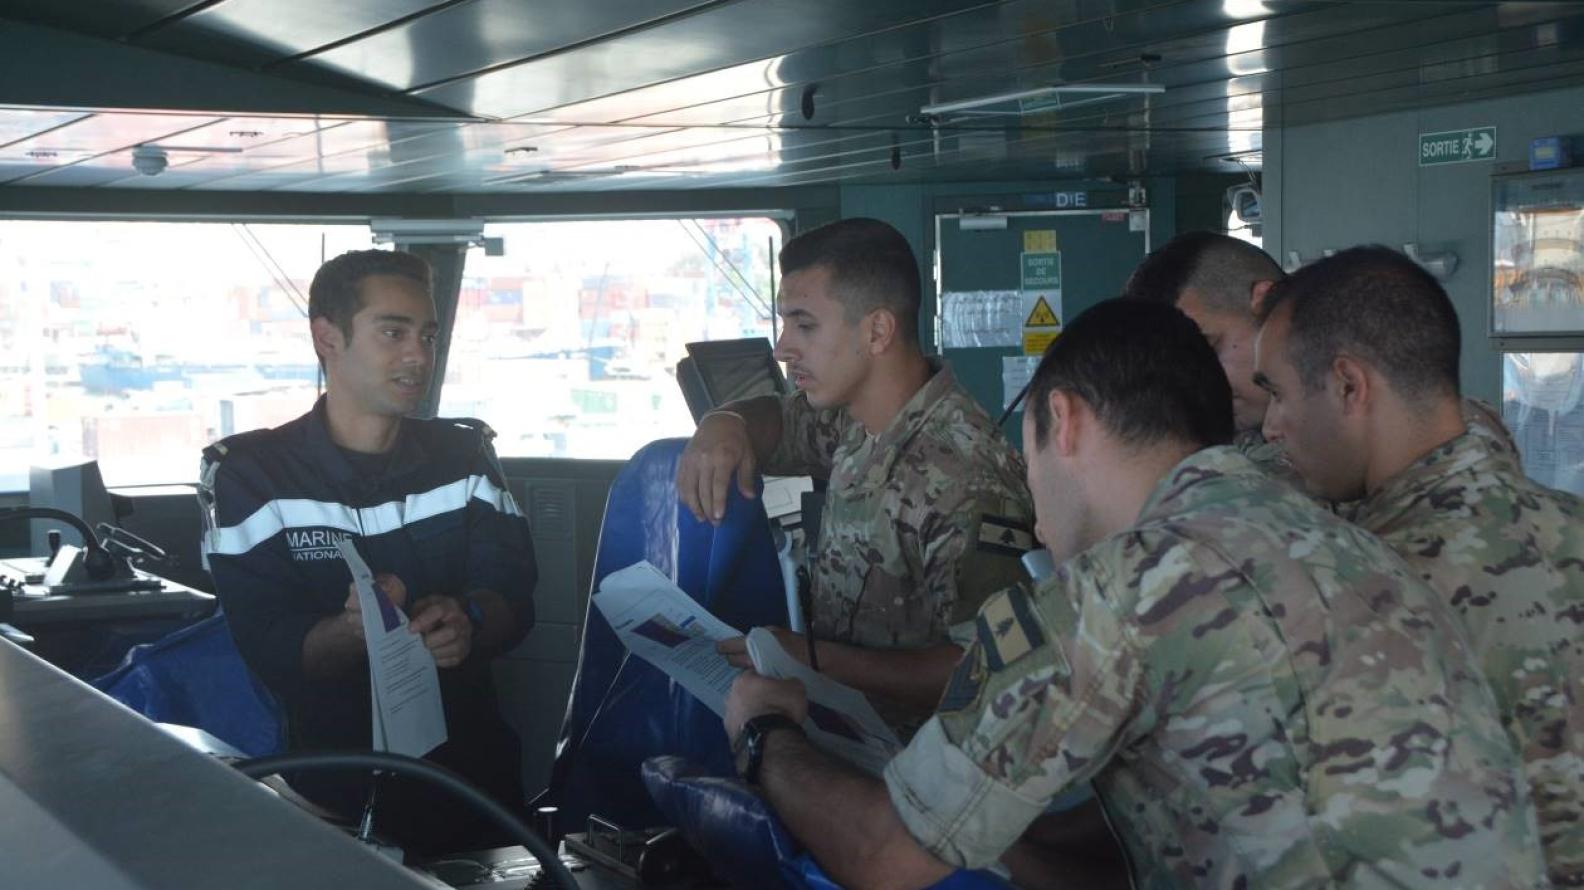  Méditerranée orientale – séquence de coopération entre le Languedoc, la Marine libanaise et la FINUL